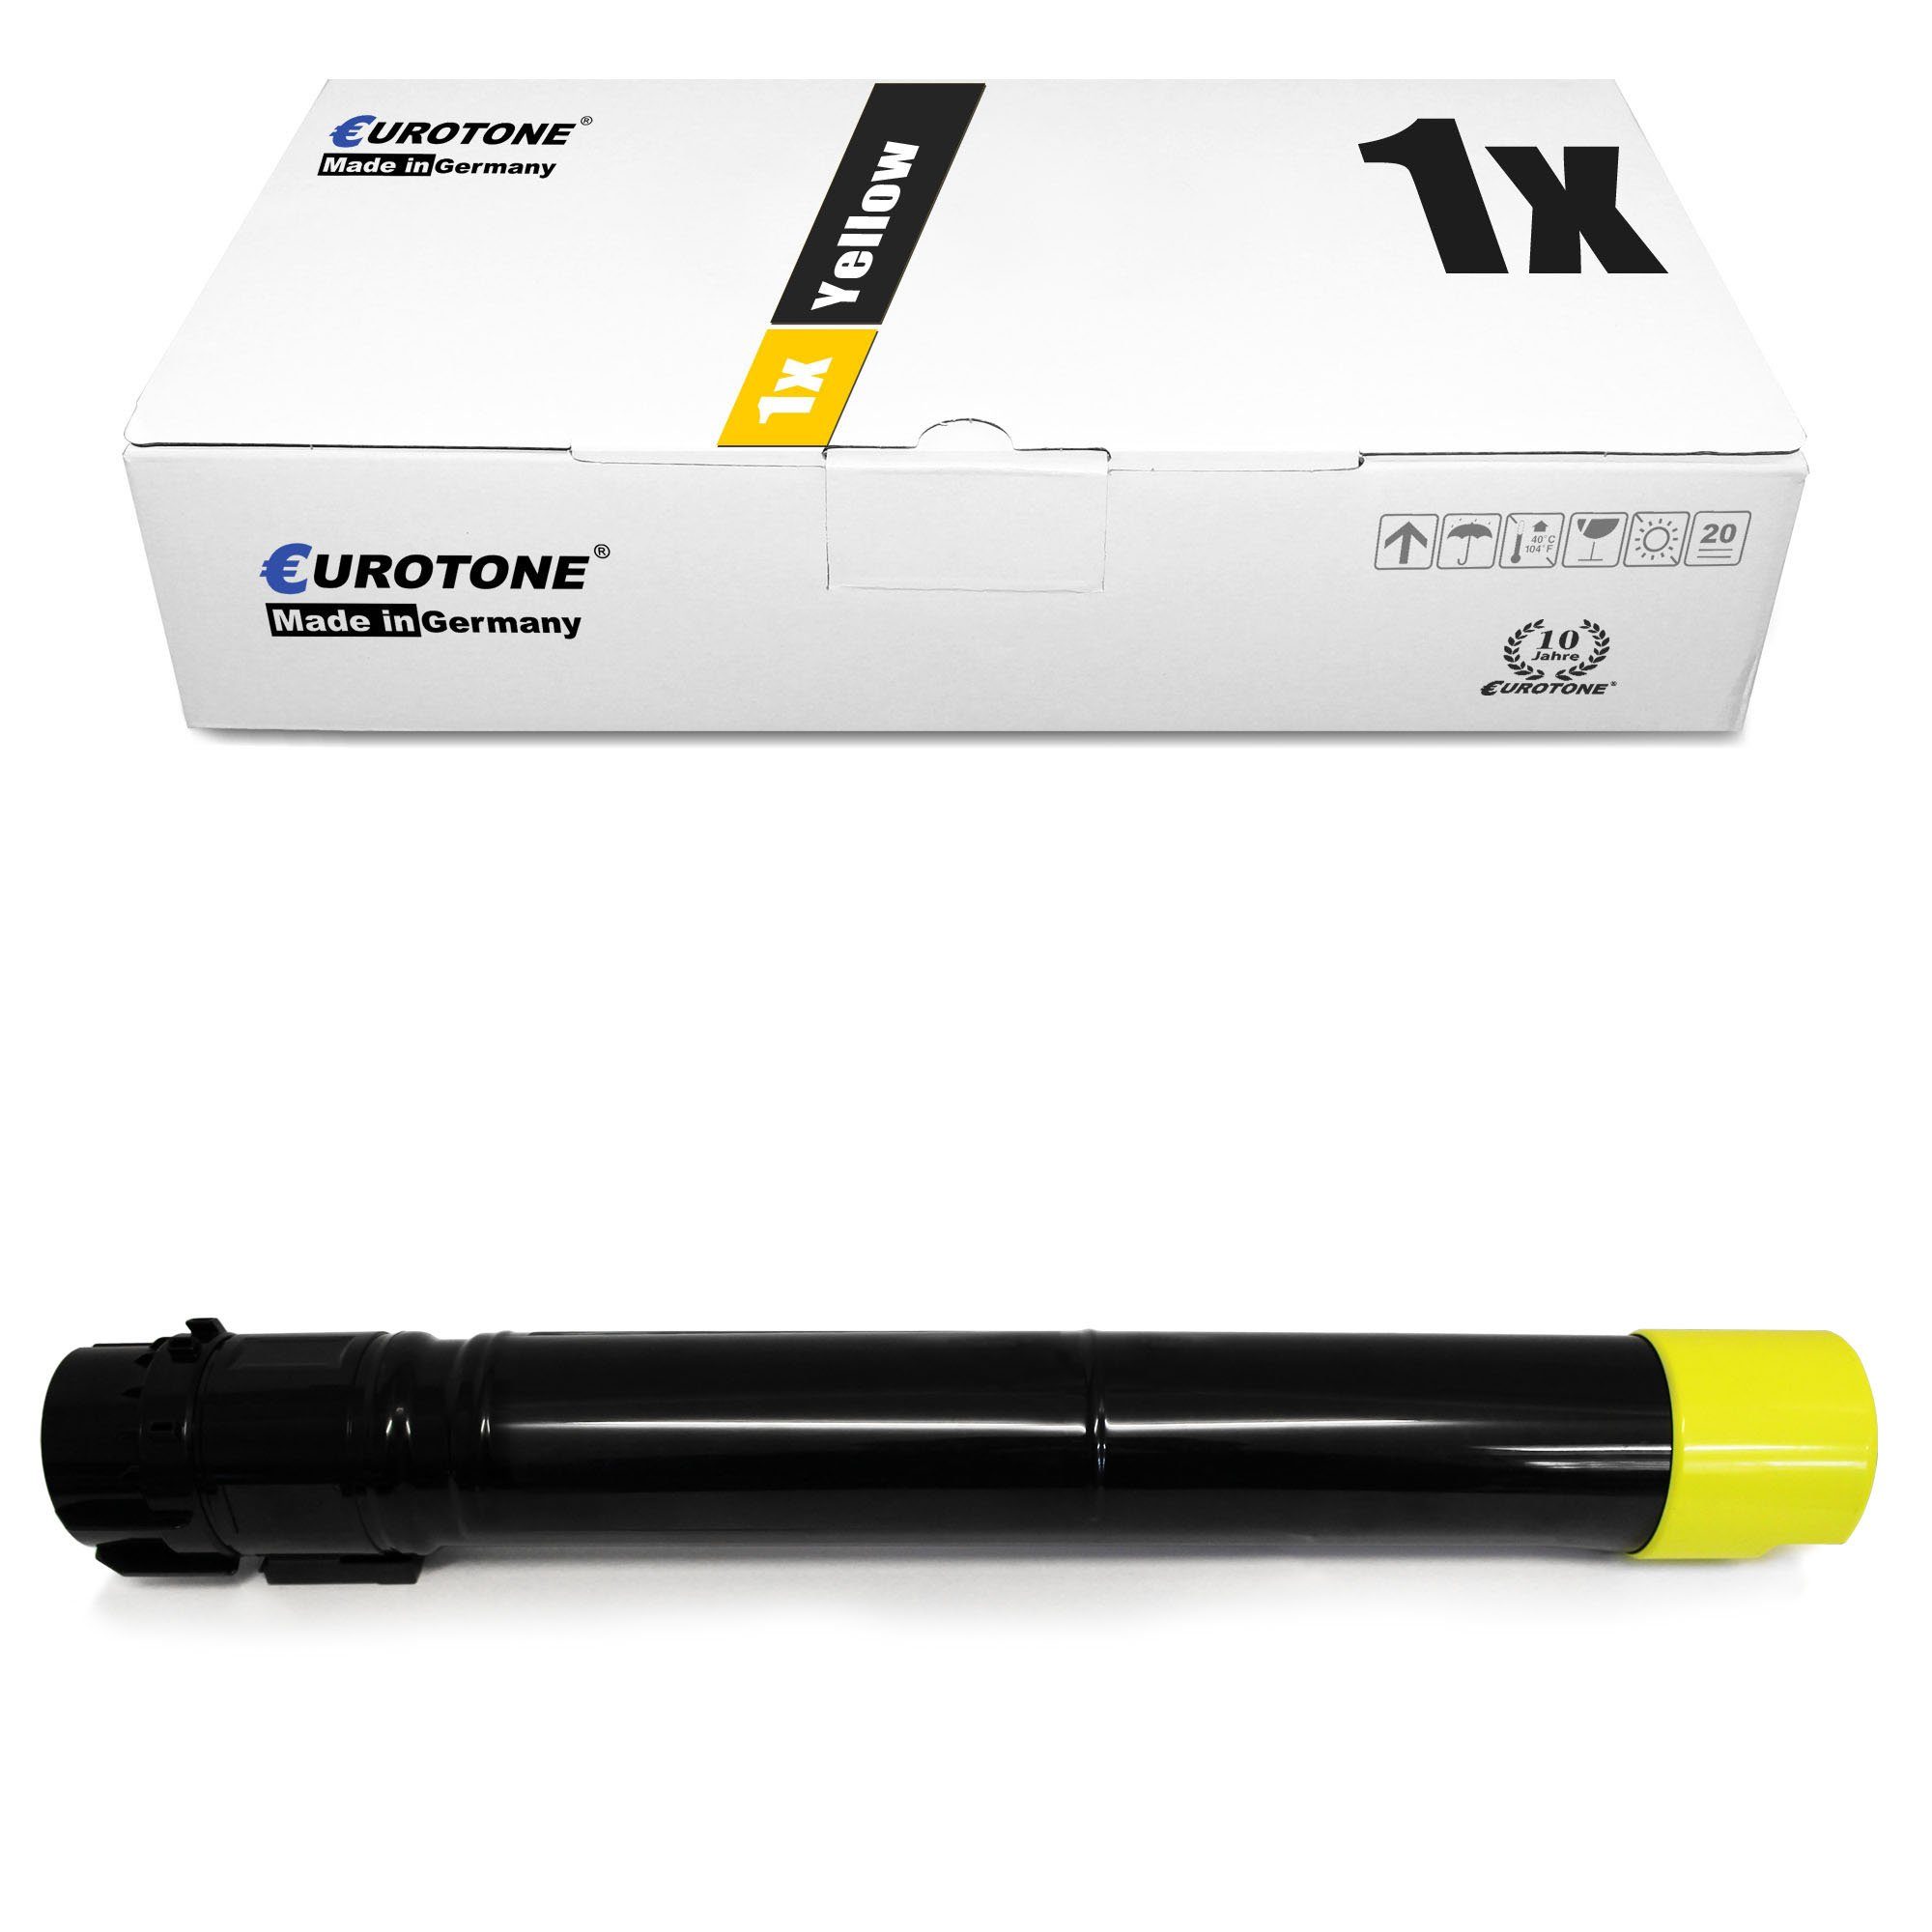 Toner Yellow ersetzt Tonerkartusche 06R01514 Xerox Eurotone